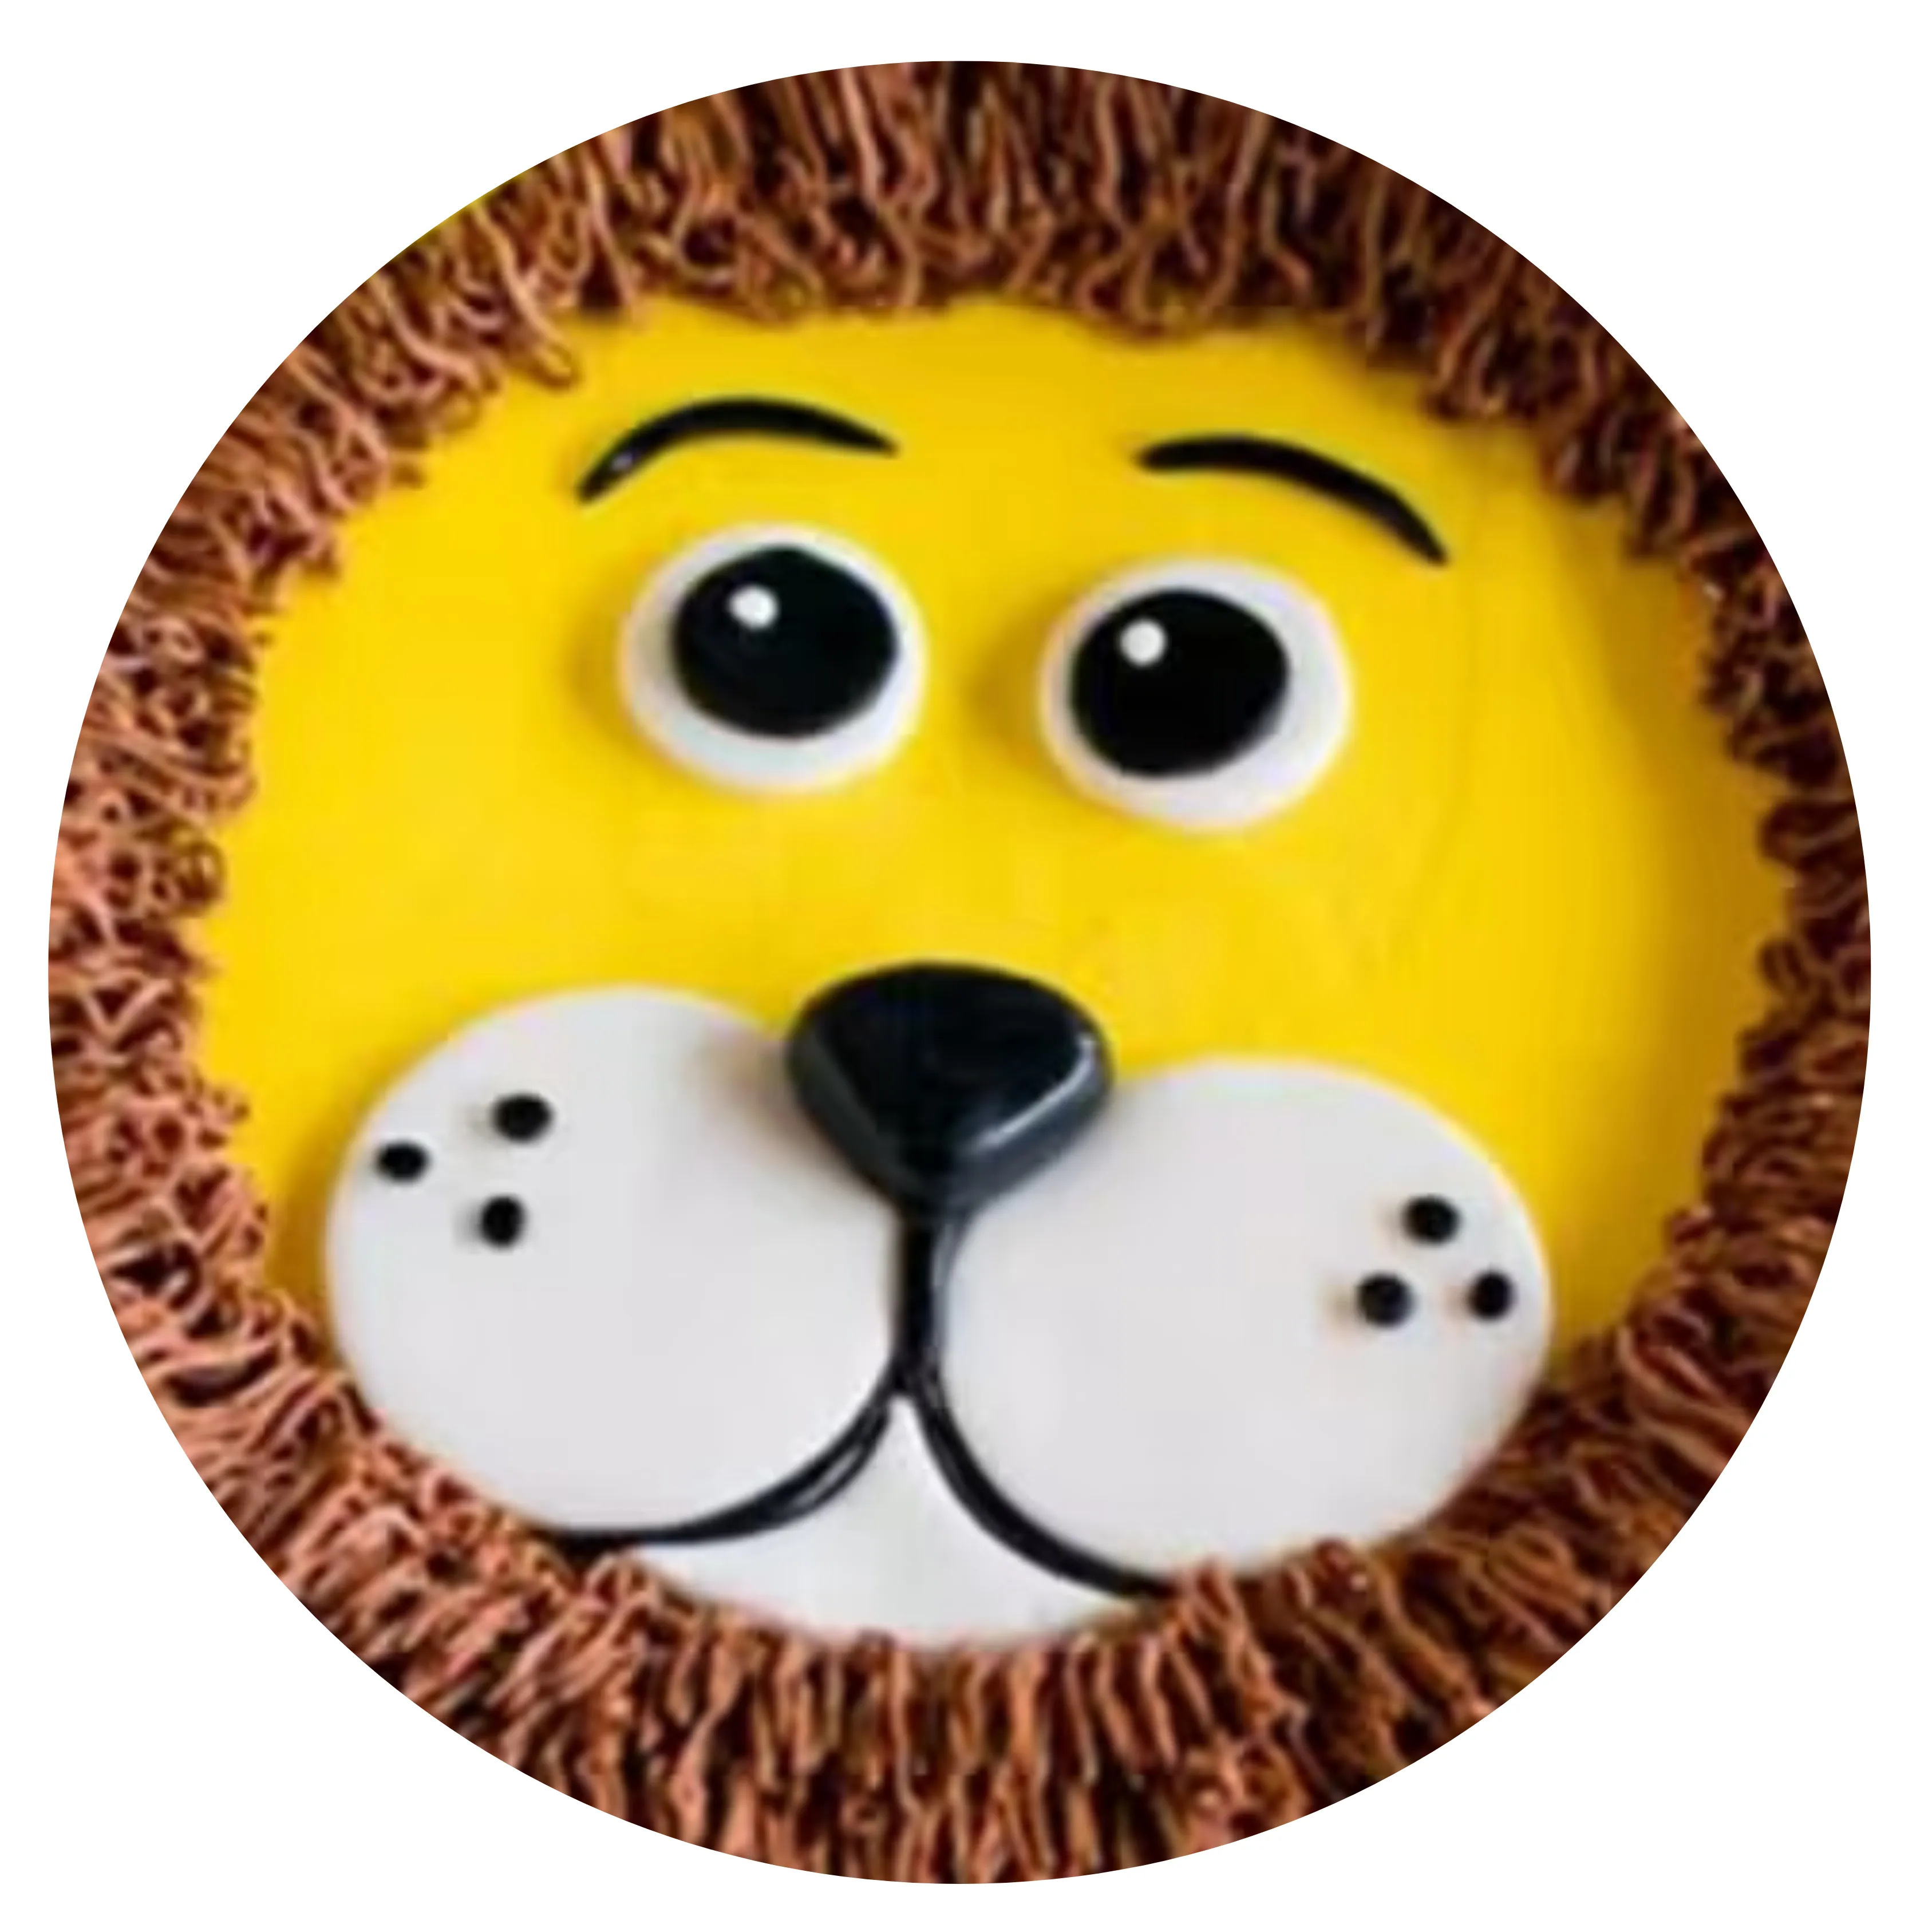 Lion Cream Cake